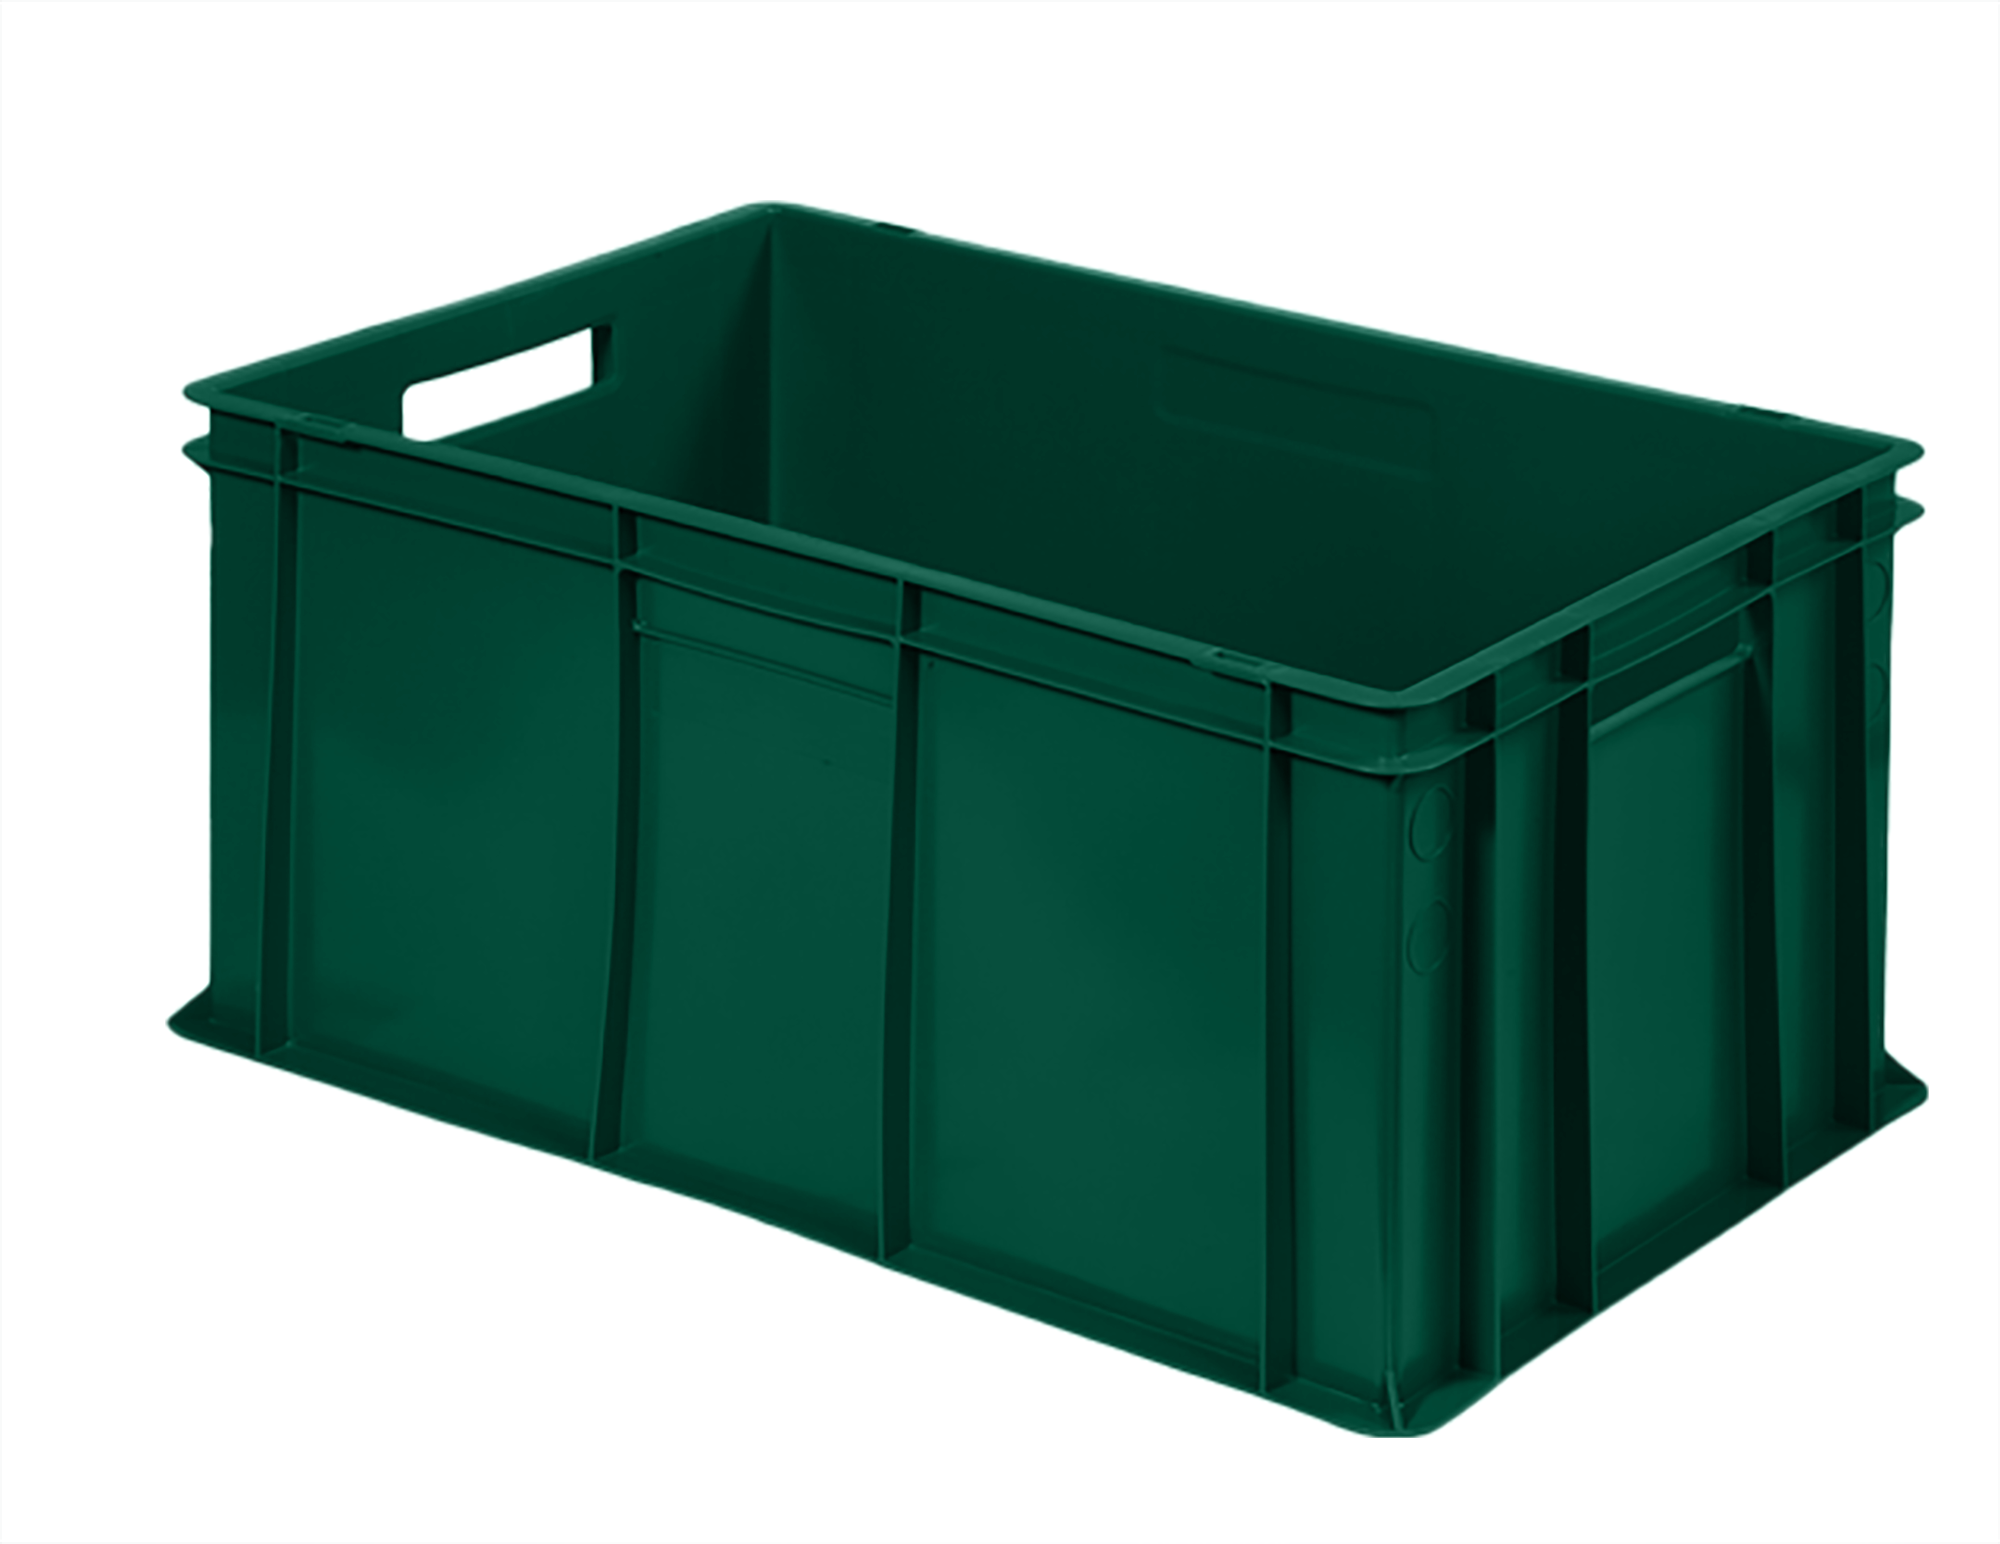 Green plastic storage bin